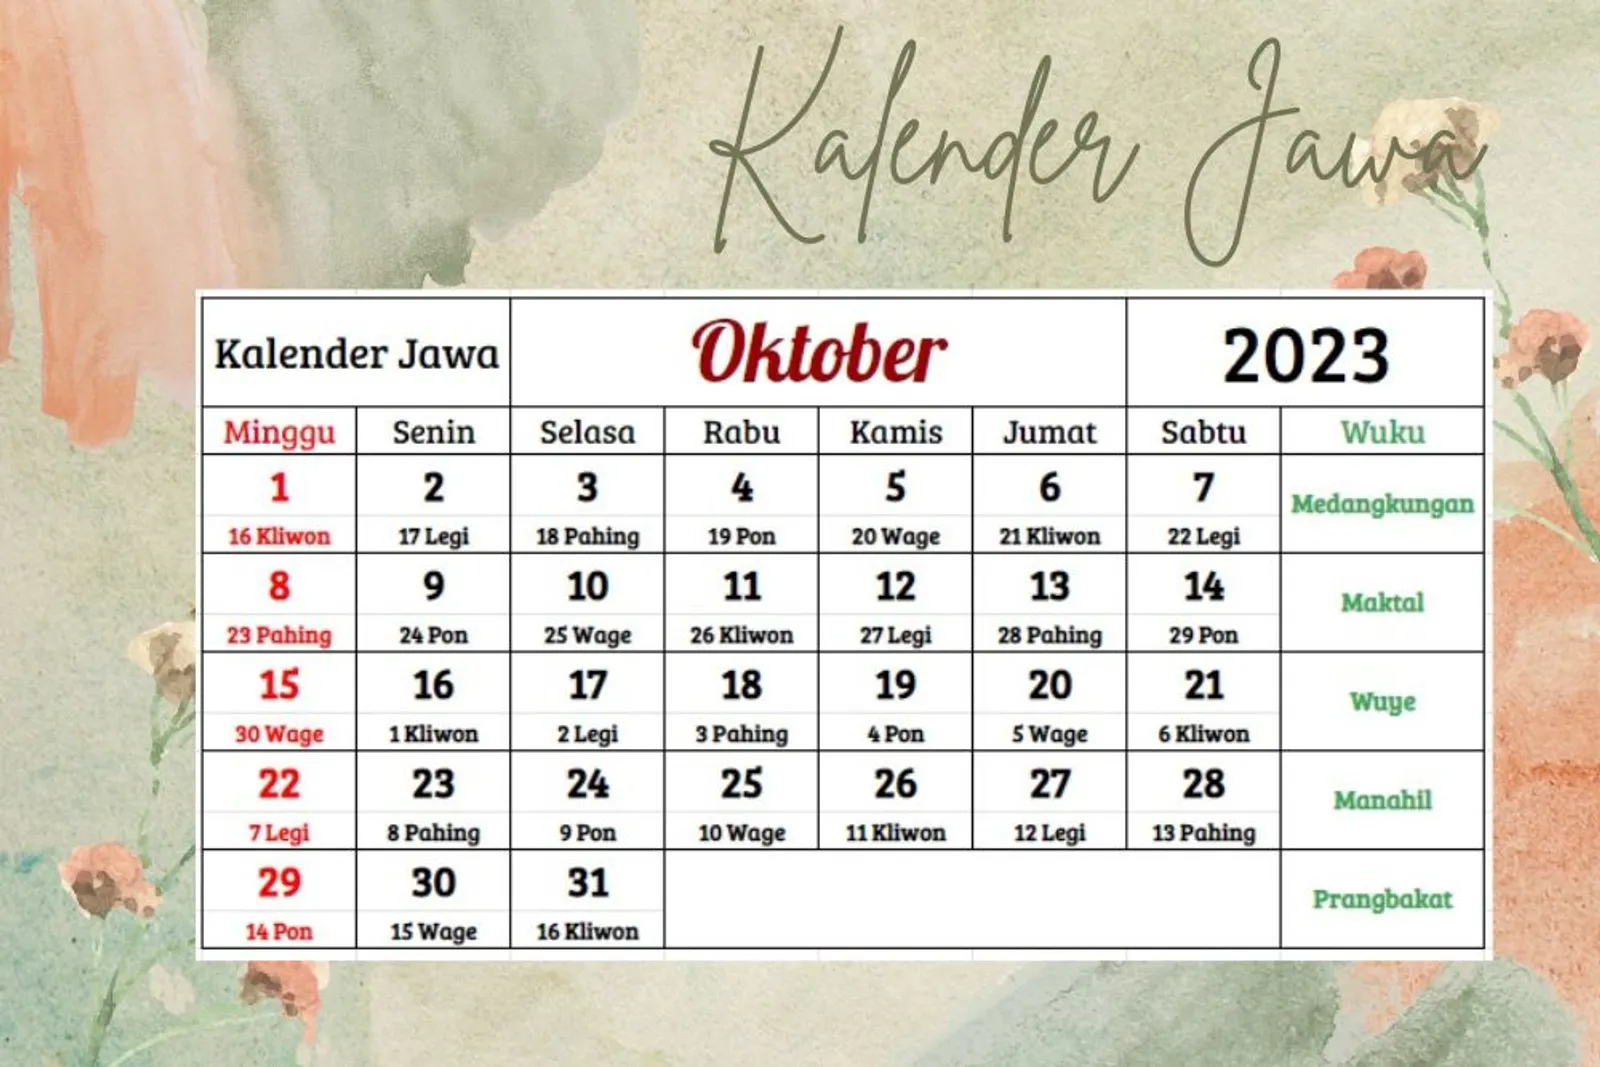 Kalender Jawa 2023 Lengkap dengan Pasaran, Membantumu Cari Hari Baik